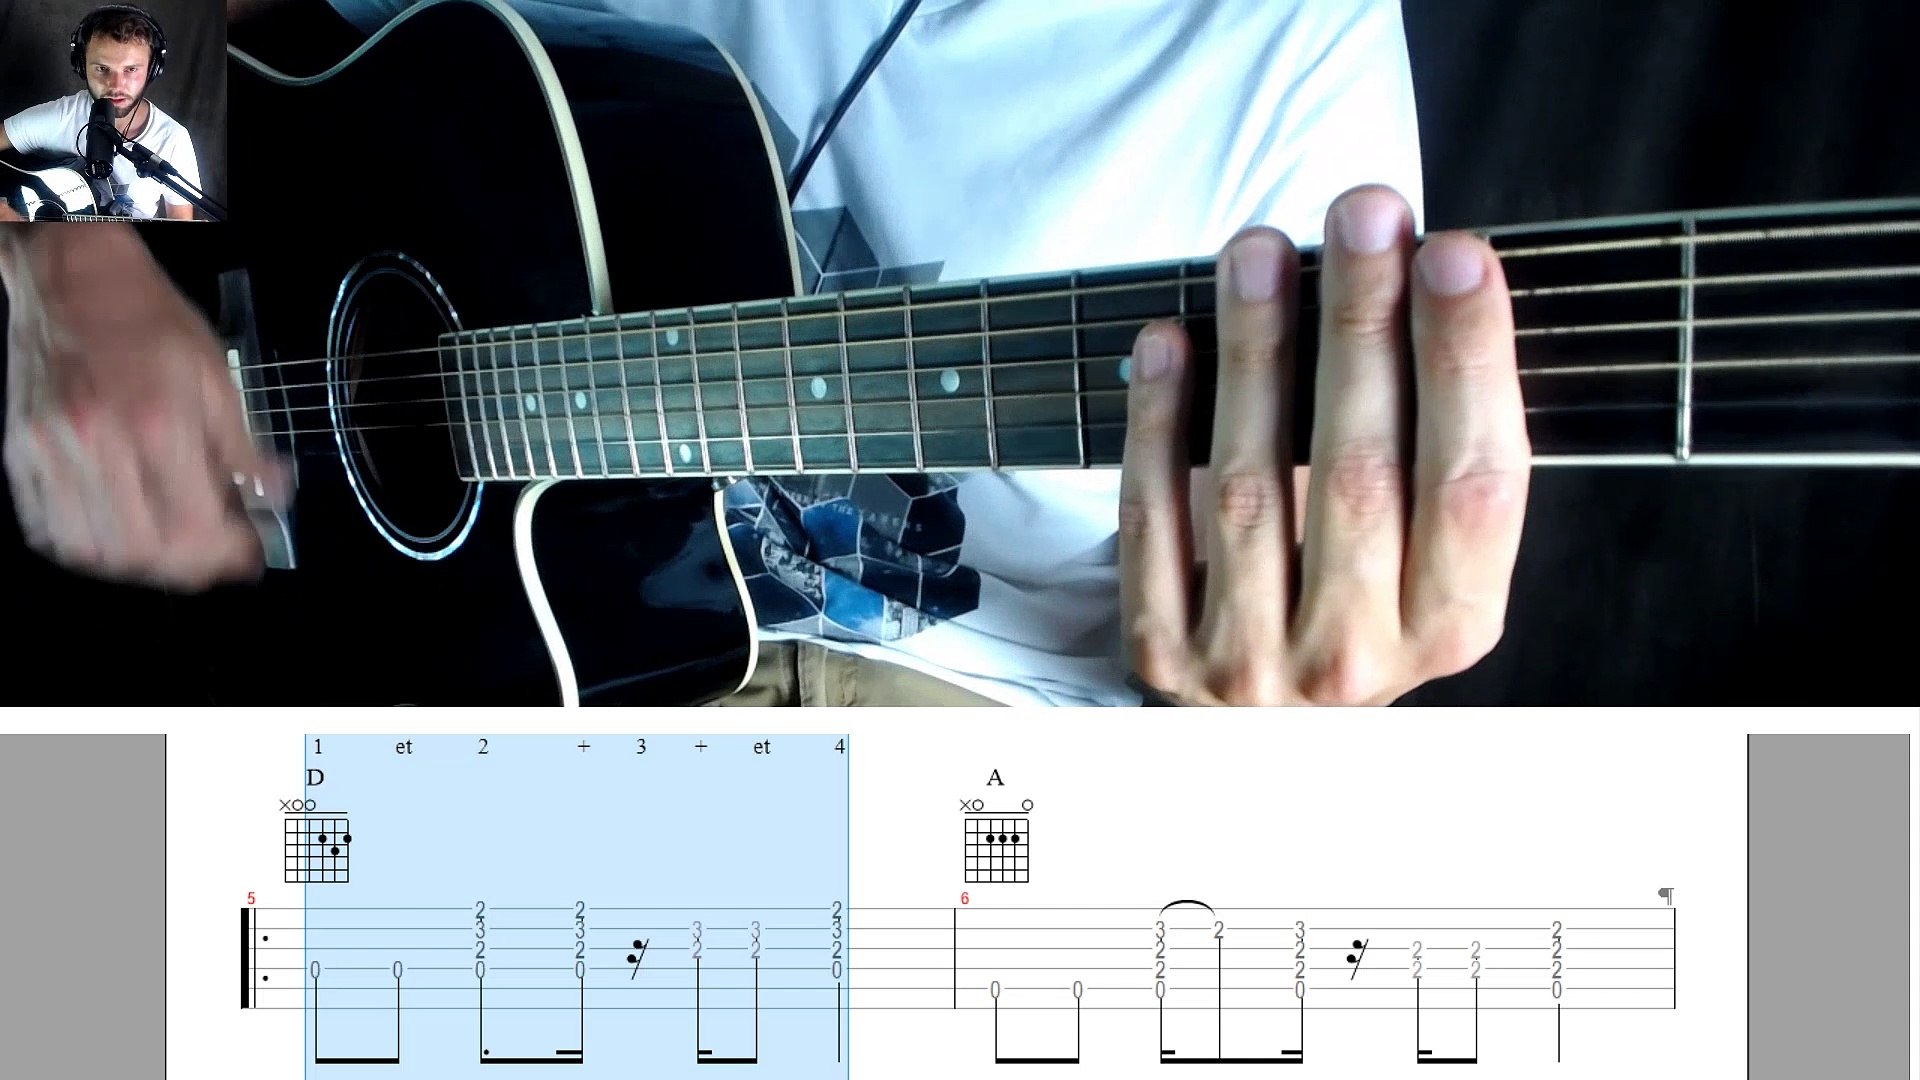 Tutoriel cours de guitare Christophe mae on s'attache - Vidéo Dailymotion